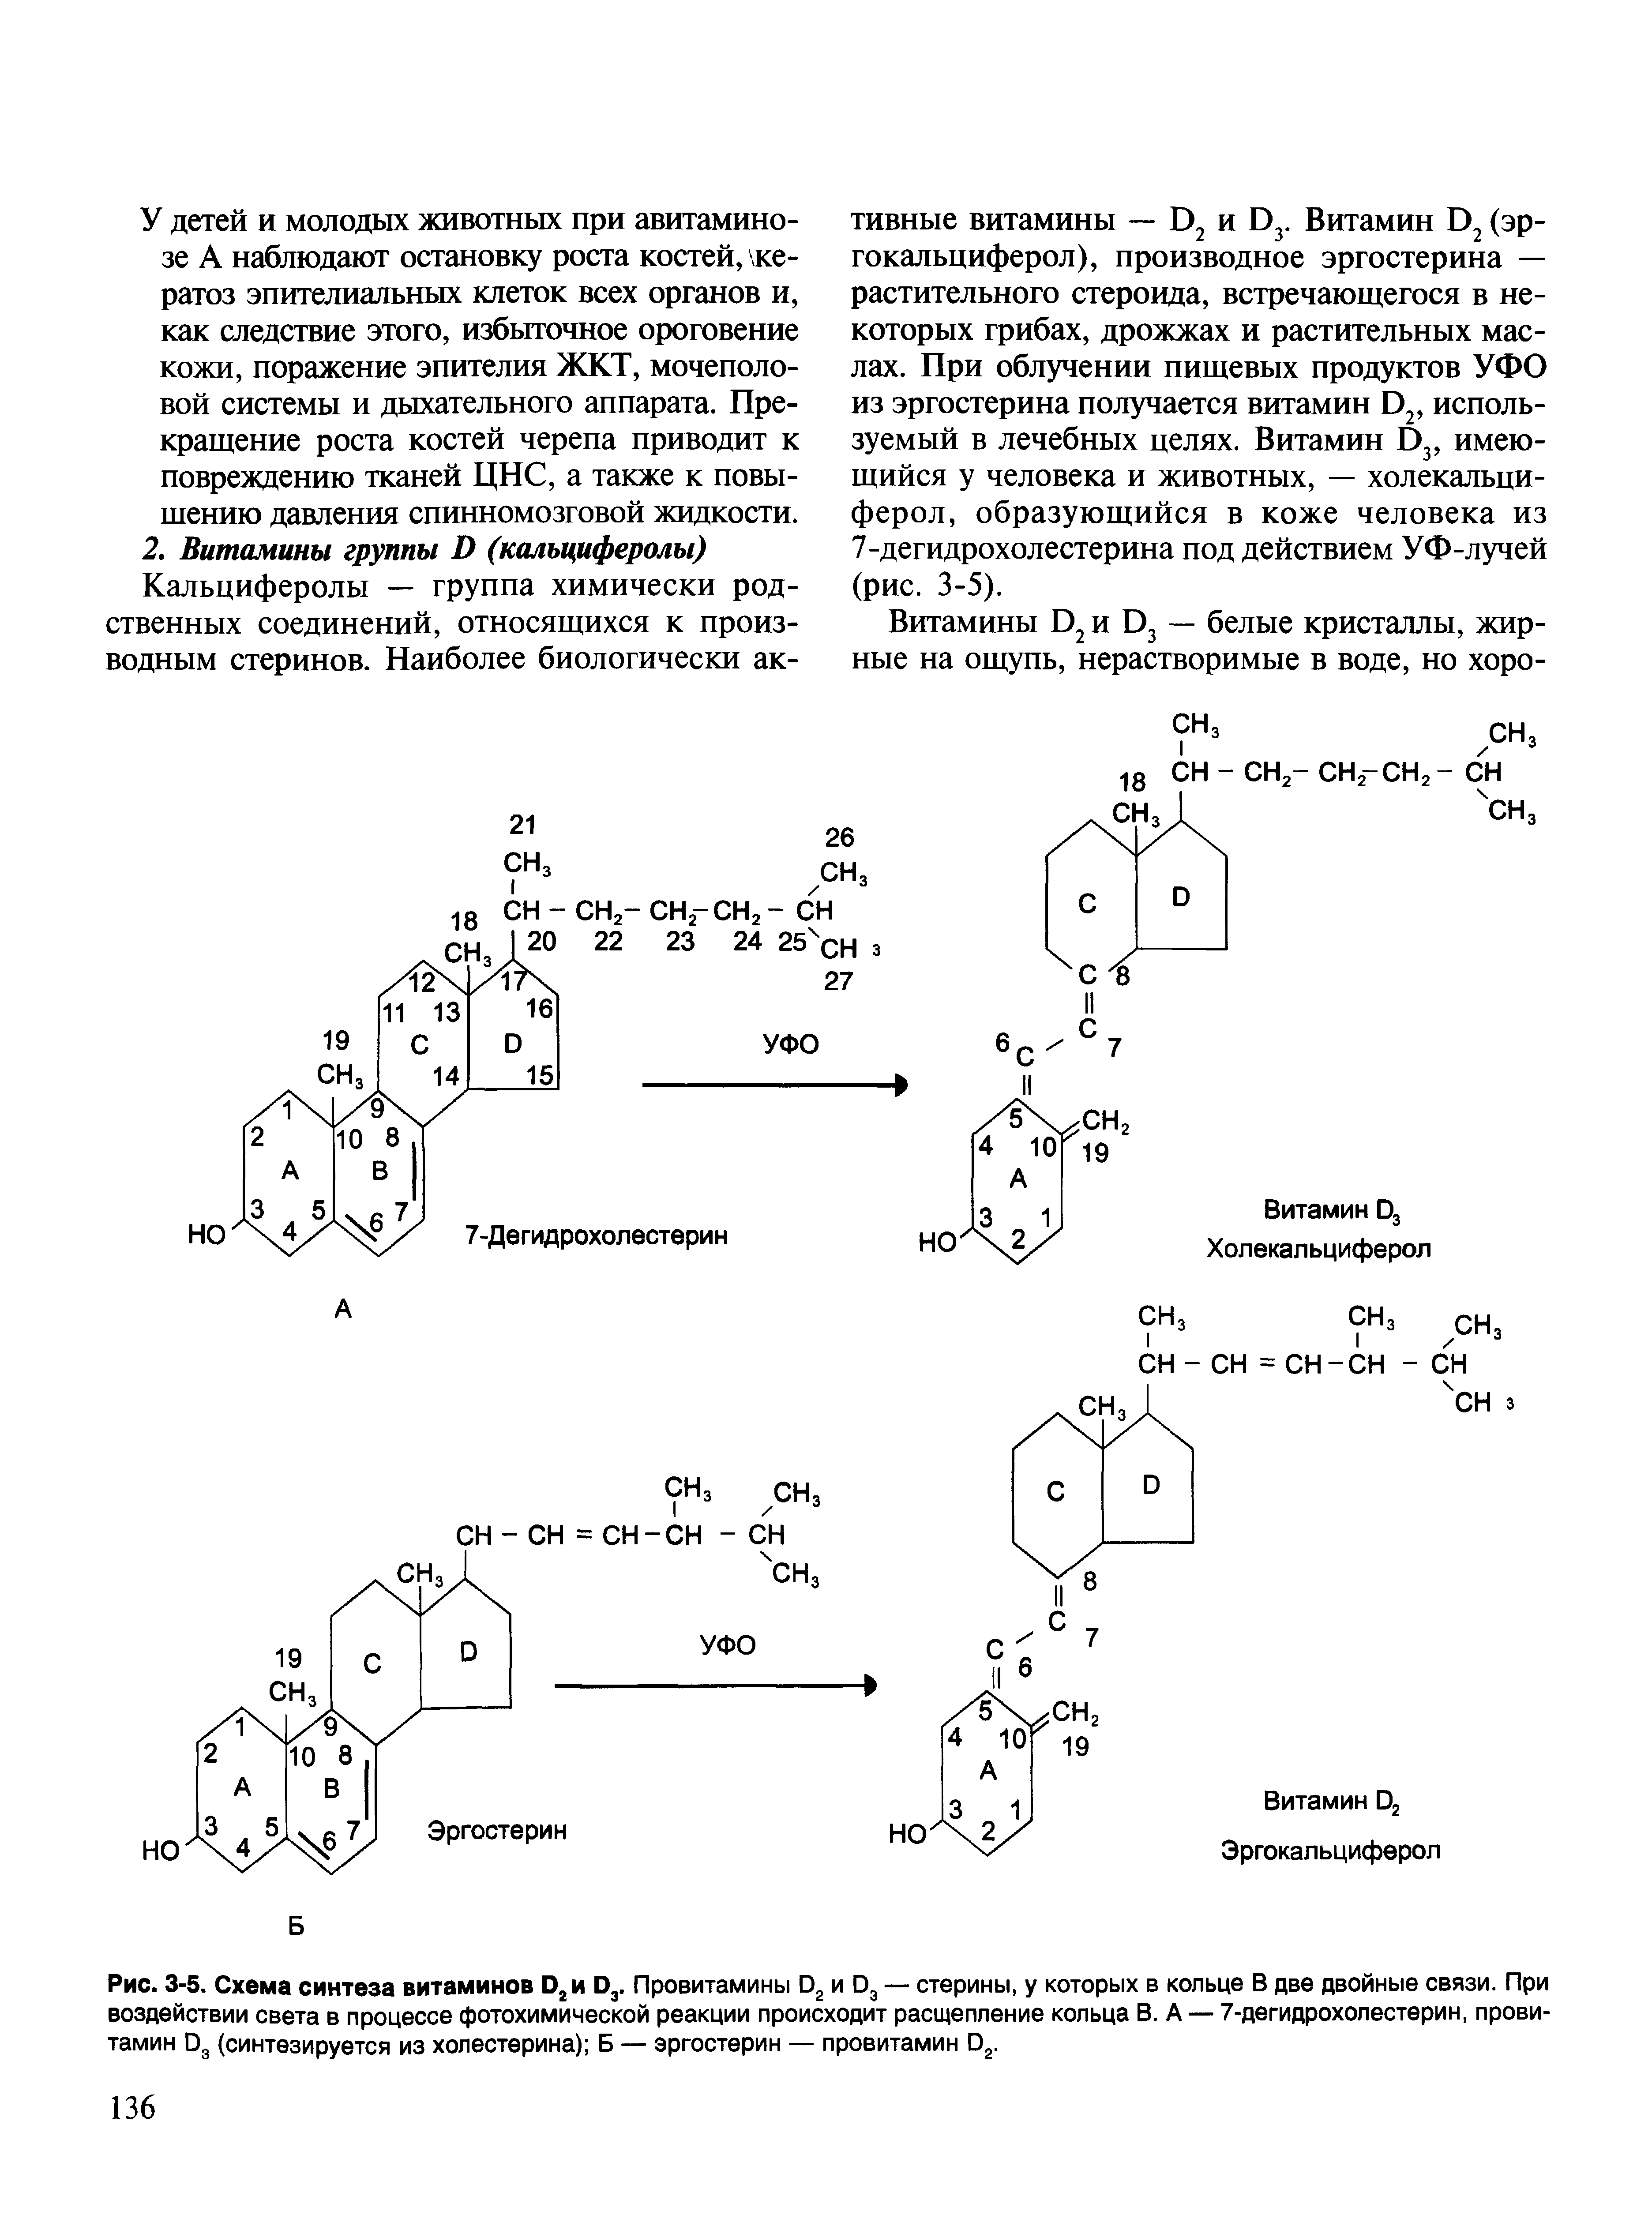 Рис. 3-5. Схема синтеза витаминов О2и О3. Провитамины 02 и 03 — стерины, у которых в кольце В две двойные связи. При воздействии света в процессе фотохимической реакции происходит расщепление кольца В. А — 7-дегидрохолестерин, провитамин 03 (синтезируется из холестерина) Б — эргостерин — провитамин О2.